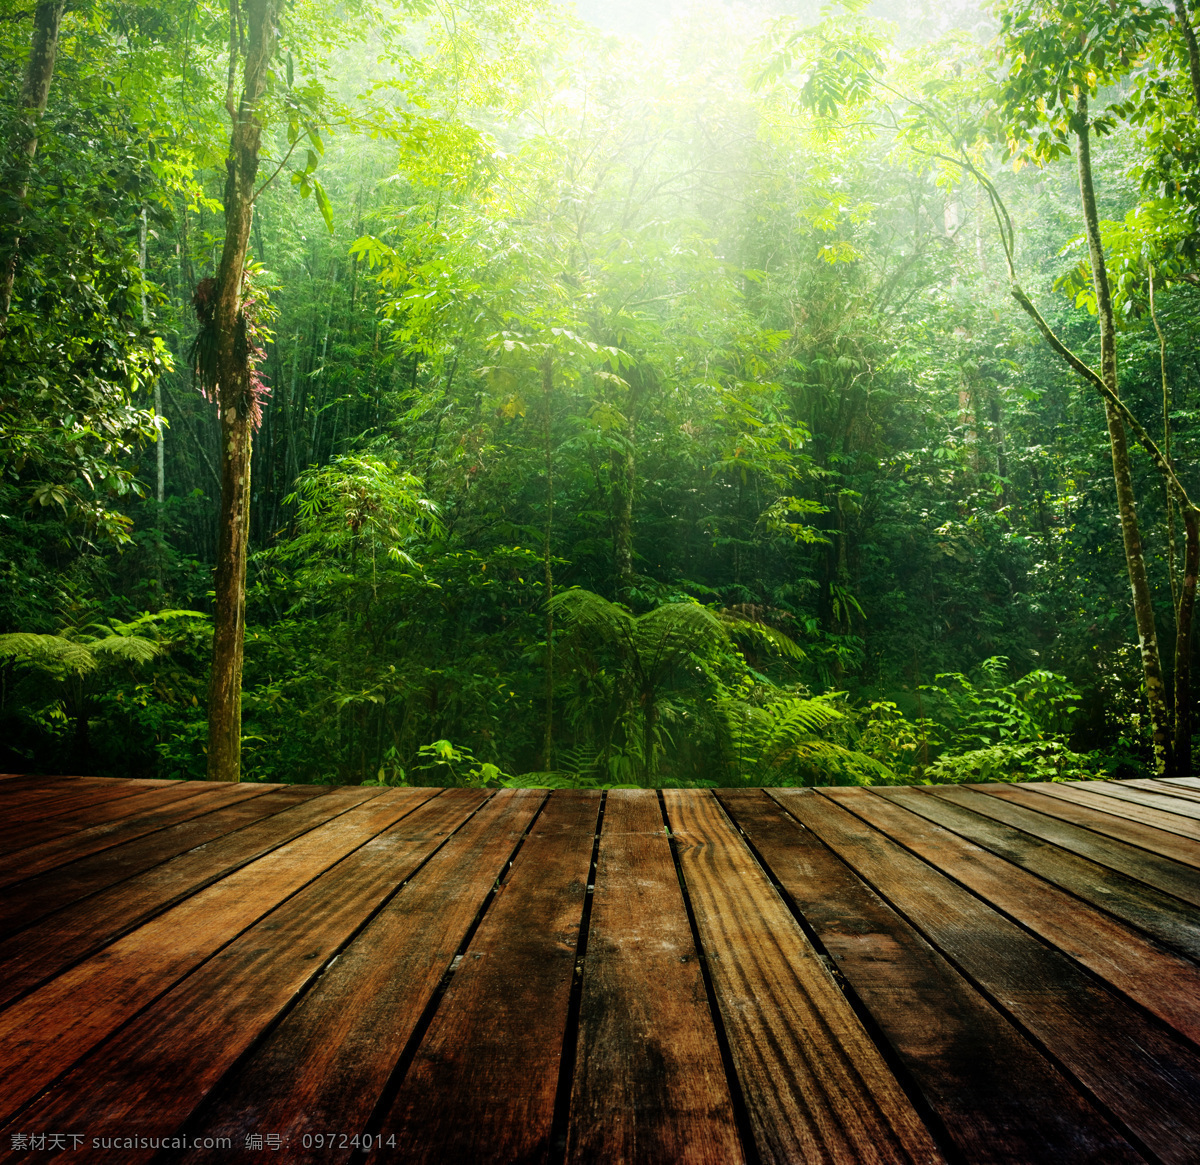 木纹 桌面 森林 背景 海报 素材图片